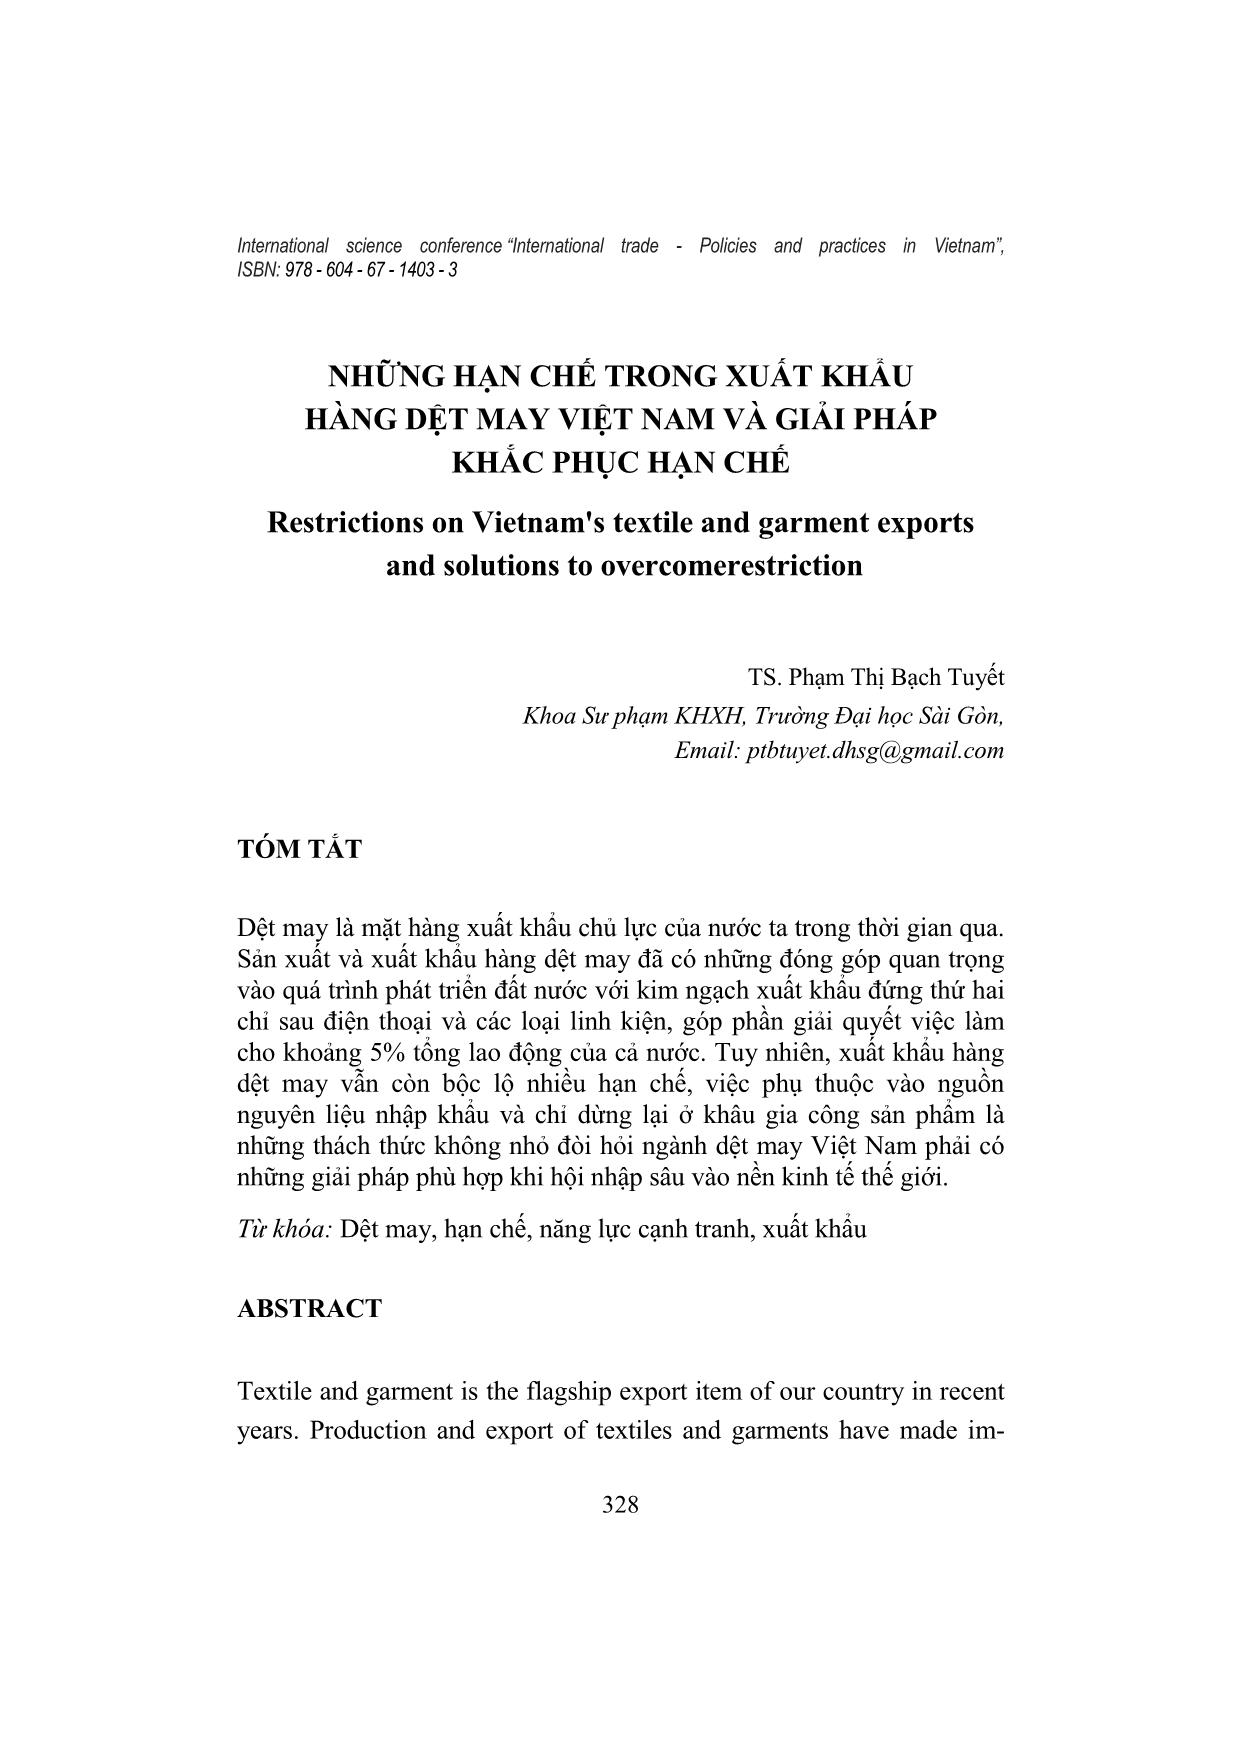 Những hạn chế trong xuất khẩu hàng dệt may Việt Nam và giải pháp khắc phục hạn chế trang 1